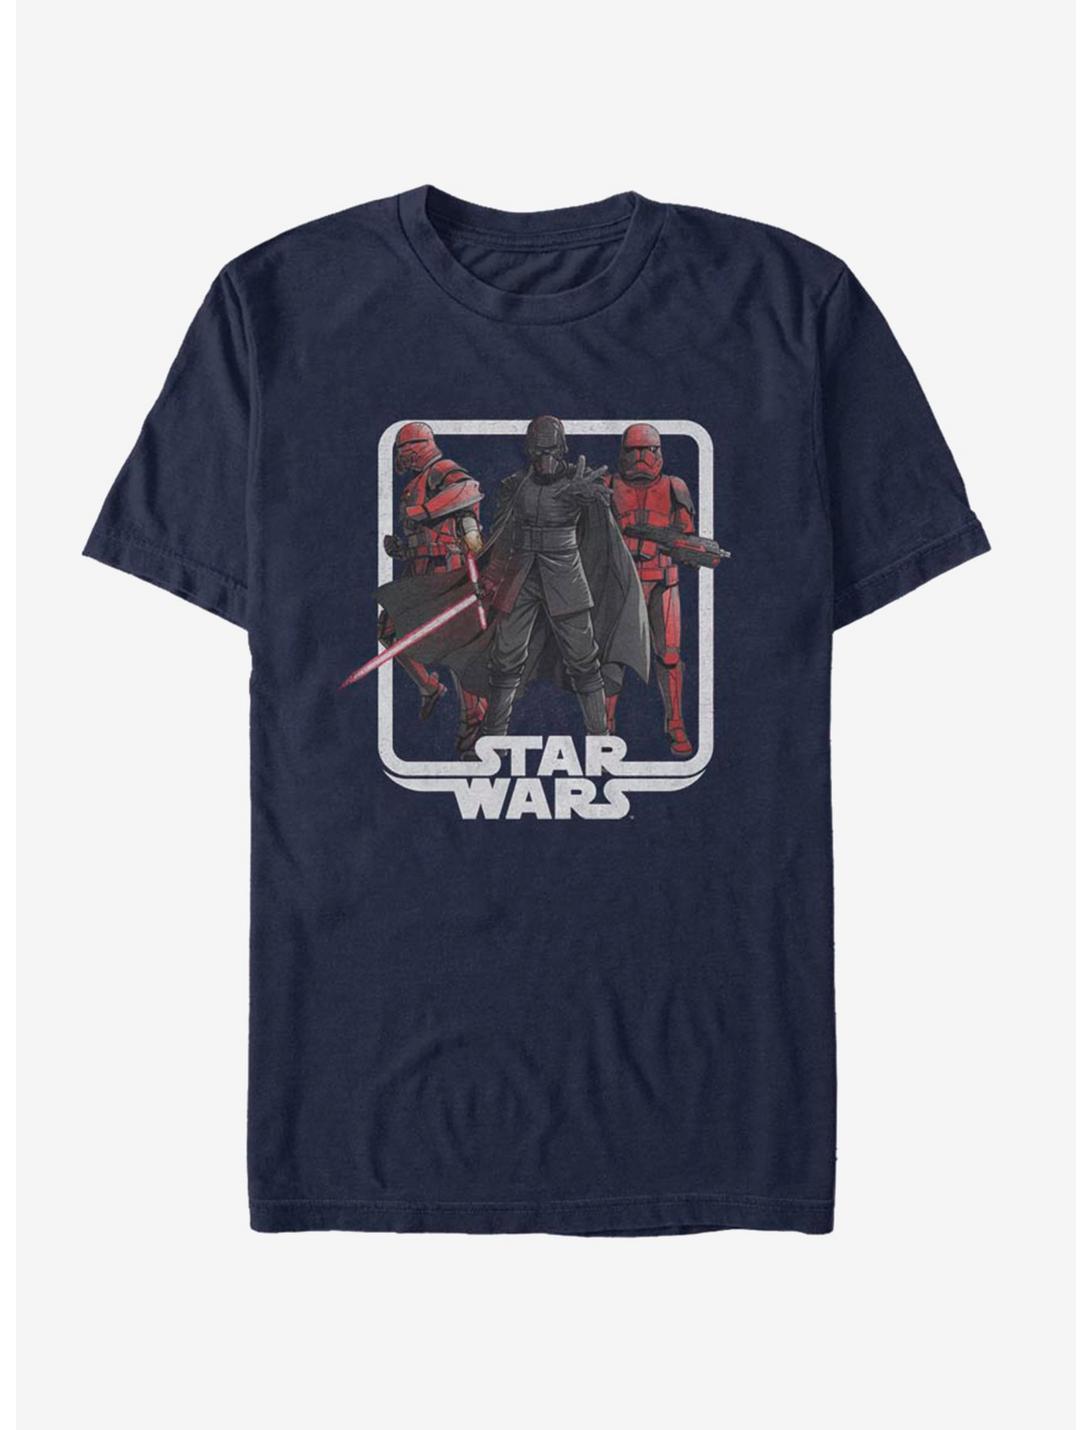 Star Wars Episode IX The Rise Of Skywalker Vindication T-Shirt, NAVY, hi-res